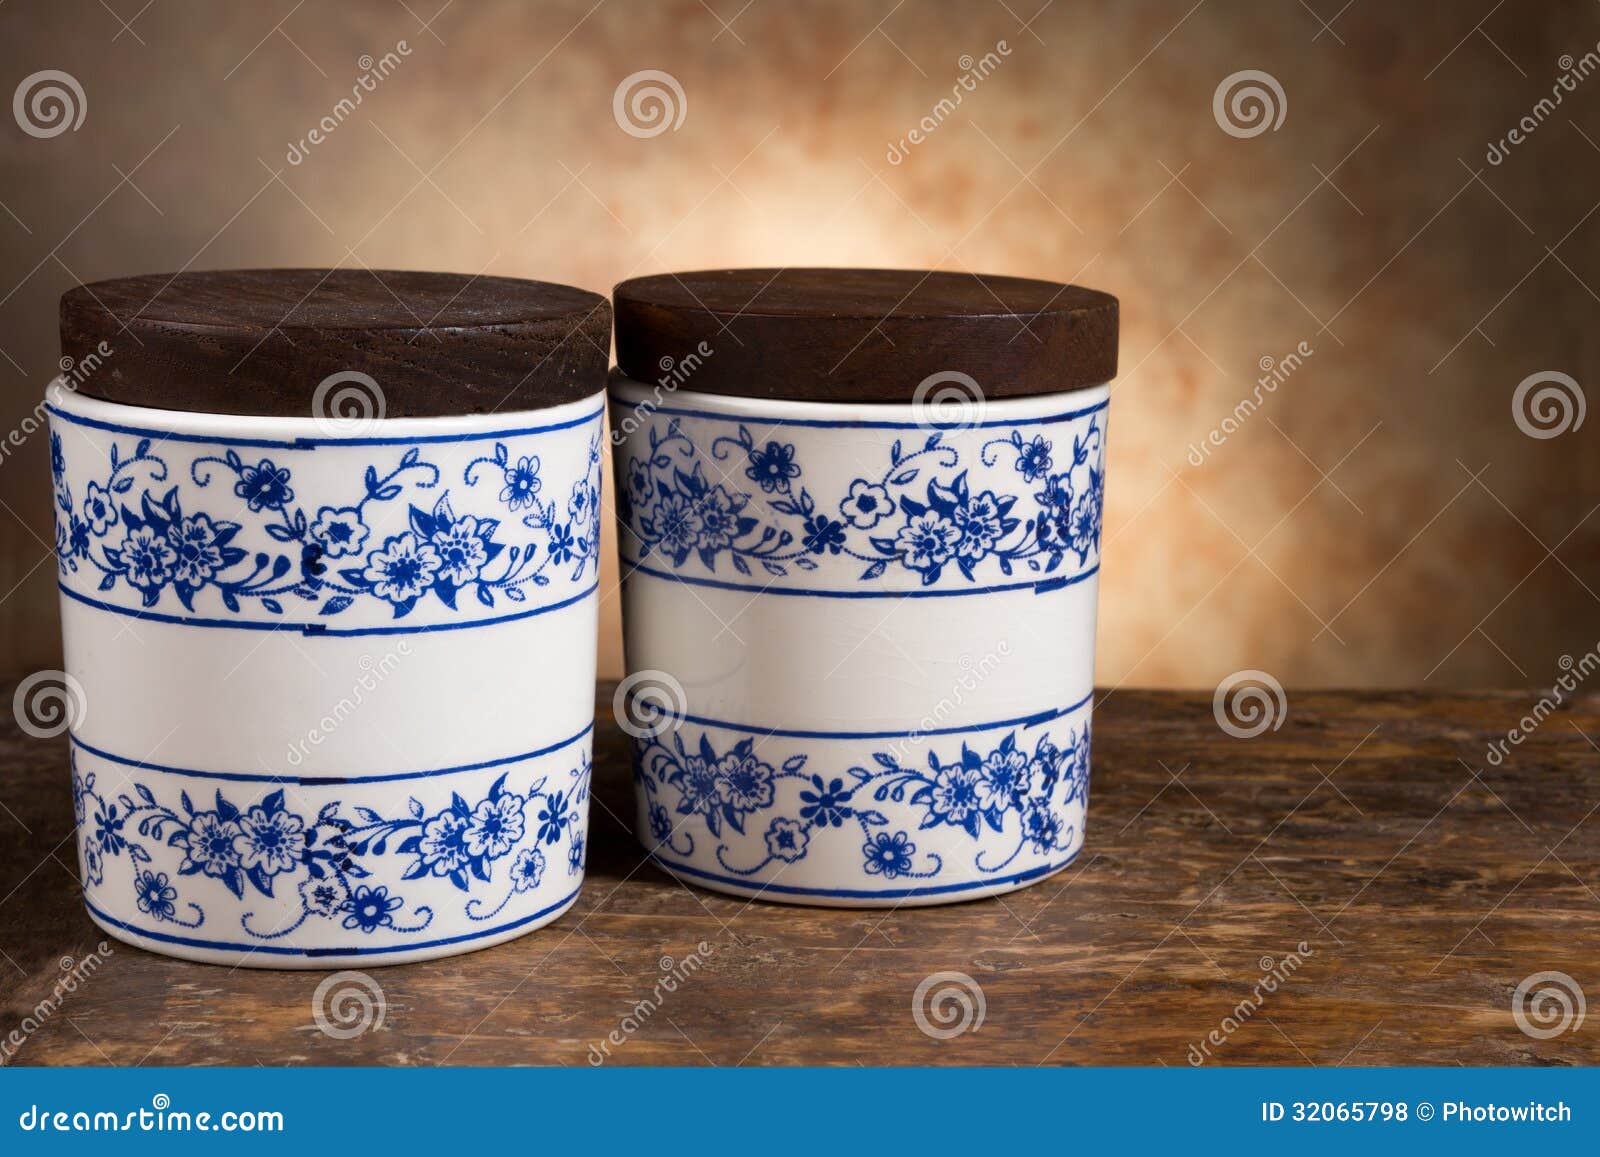 antique ointment or balm pots